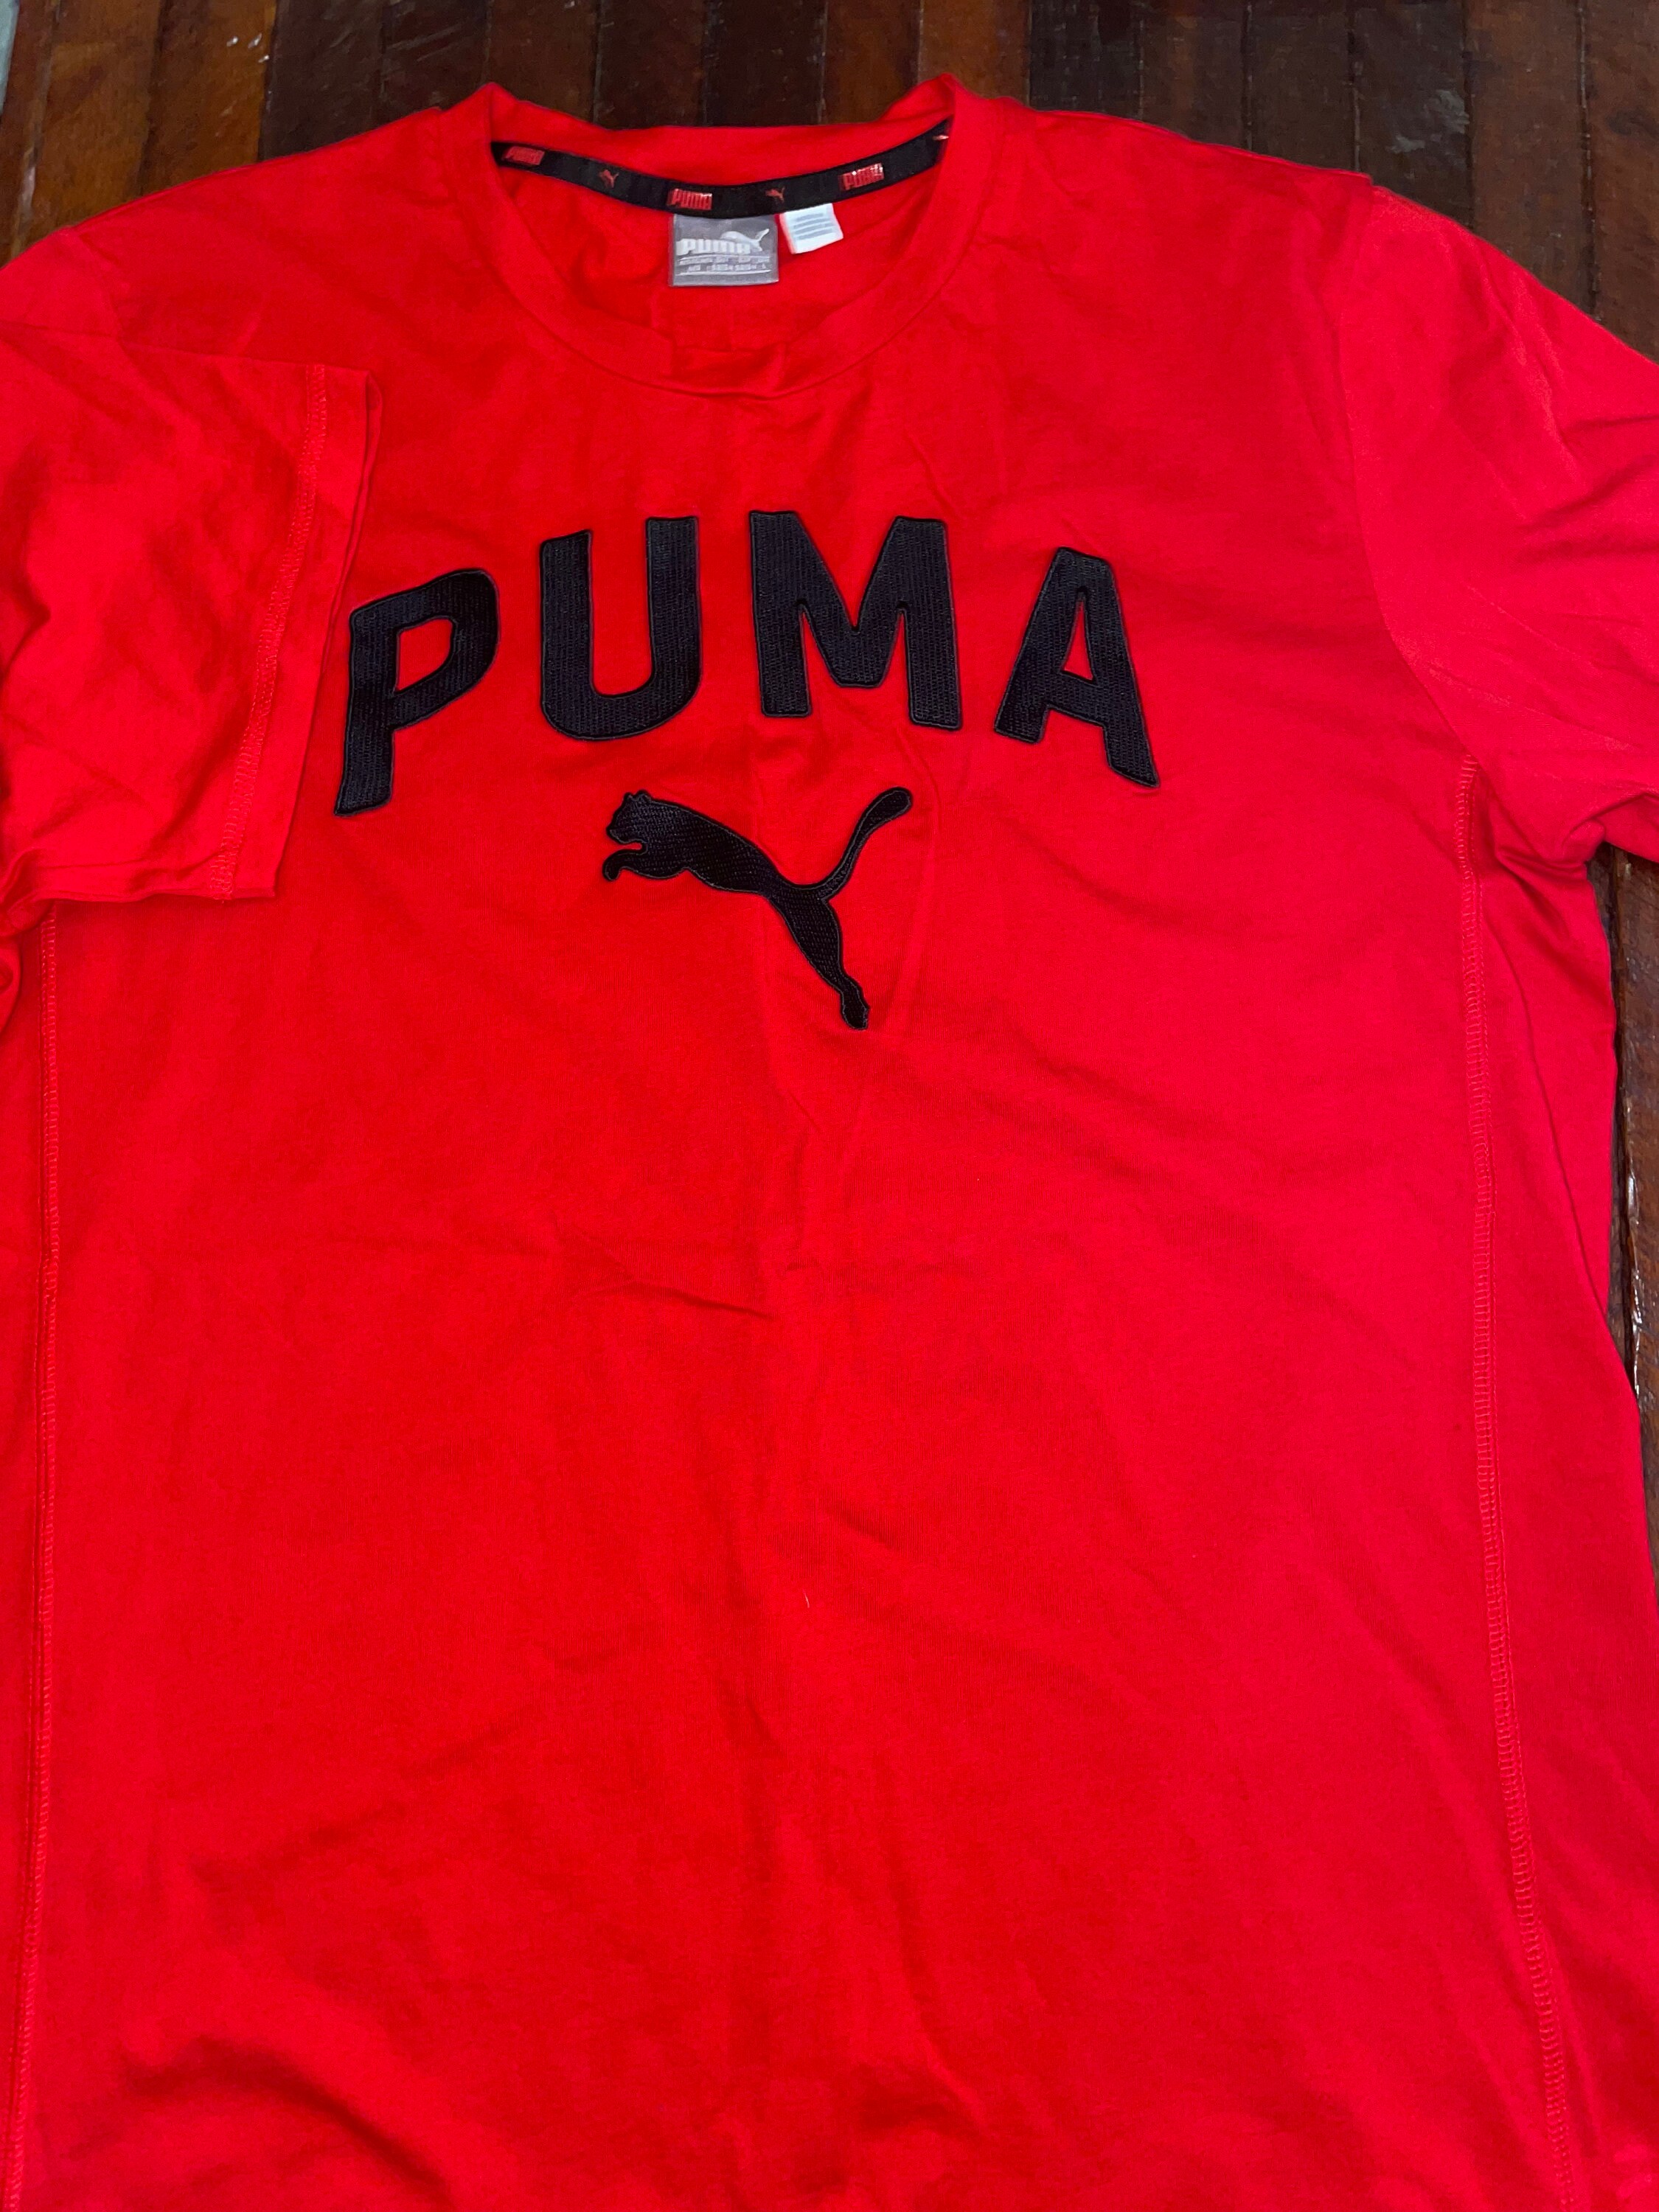 Red and Black PUMA Tshirt - Etsy